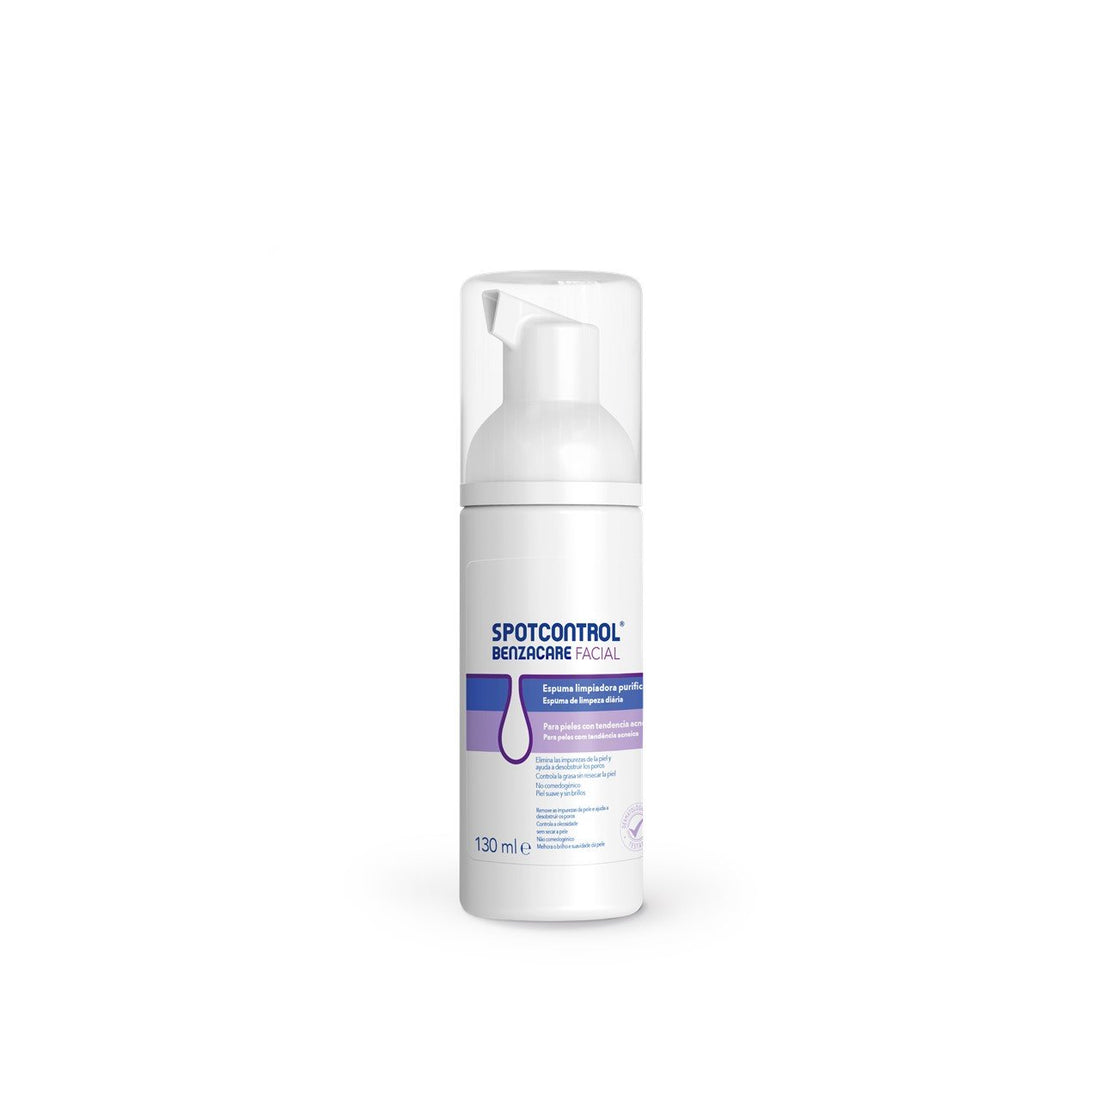 Benzacare Spotcontrol Espuma de limpeza purificante para pele com tendência a acne 130ml (4,40fl oz)